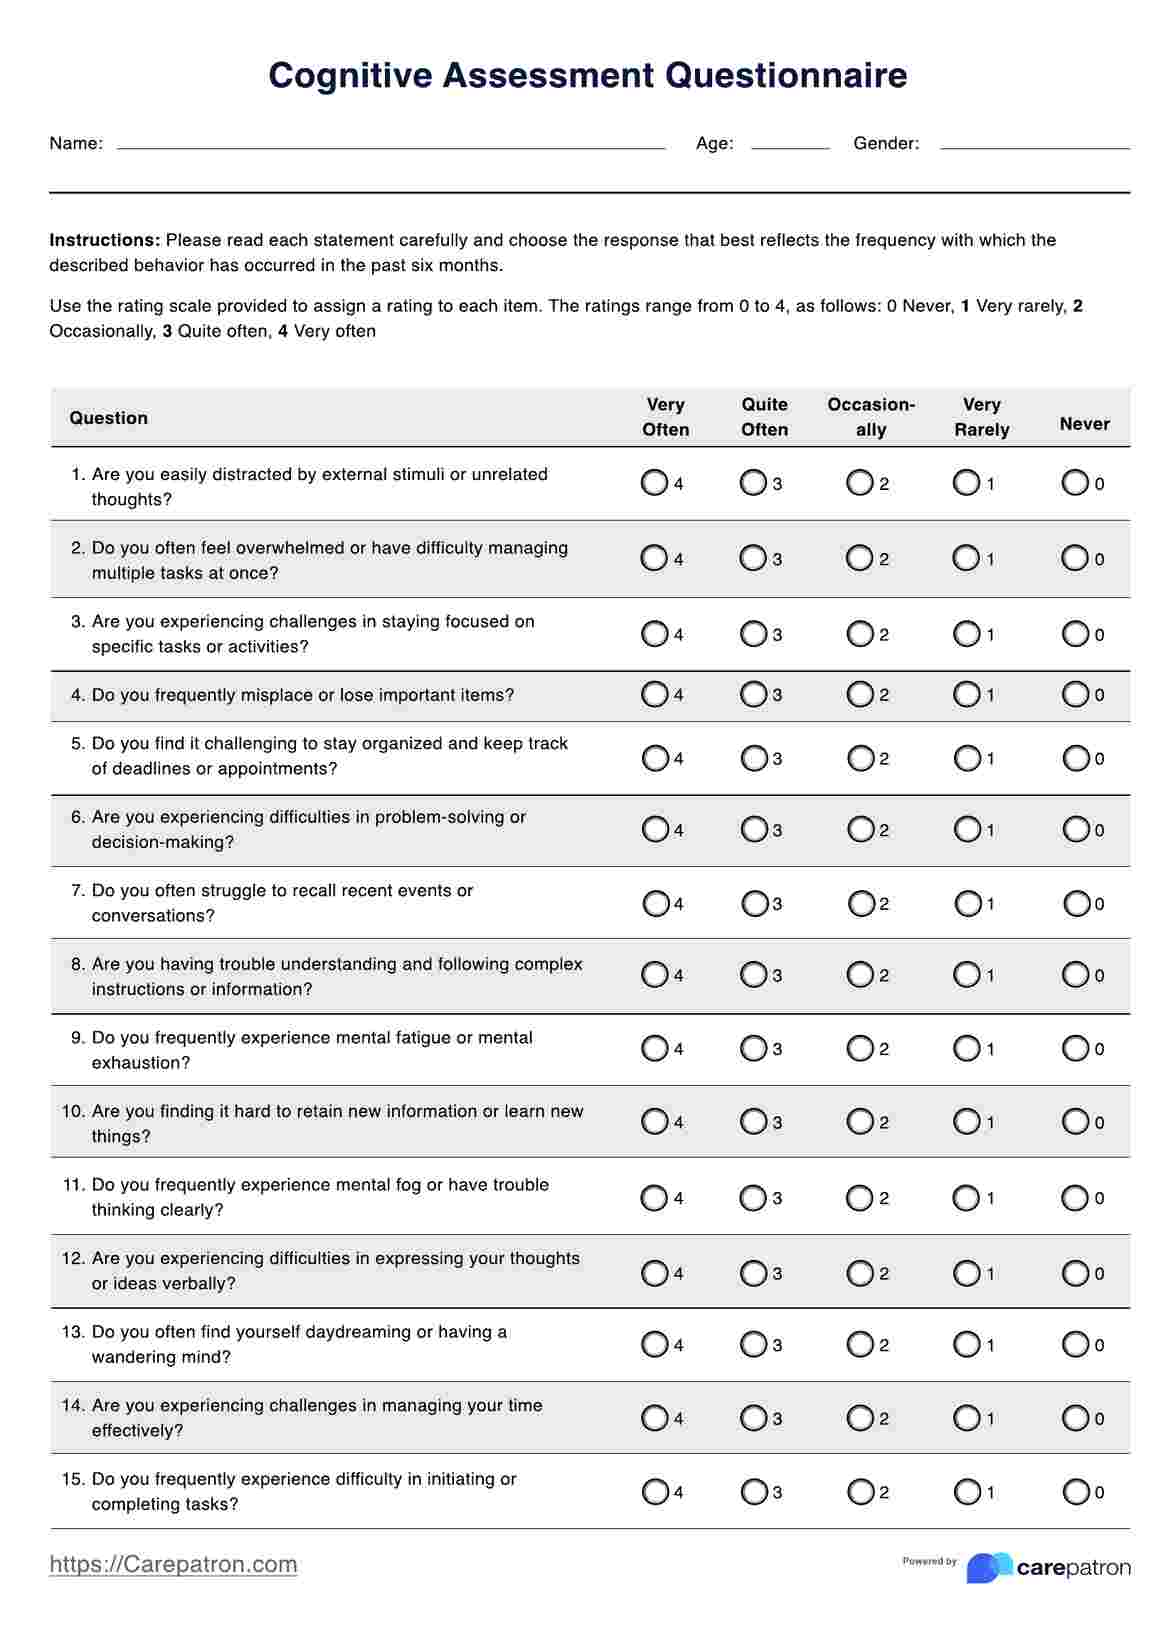 Cognitive Assessment Questionnaire PDF Example